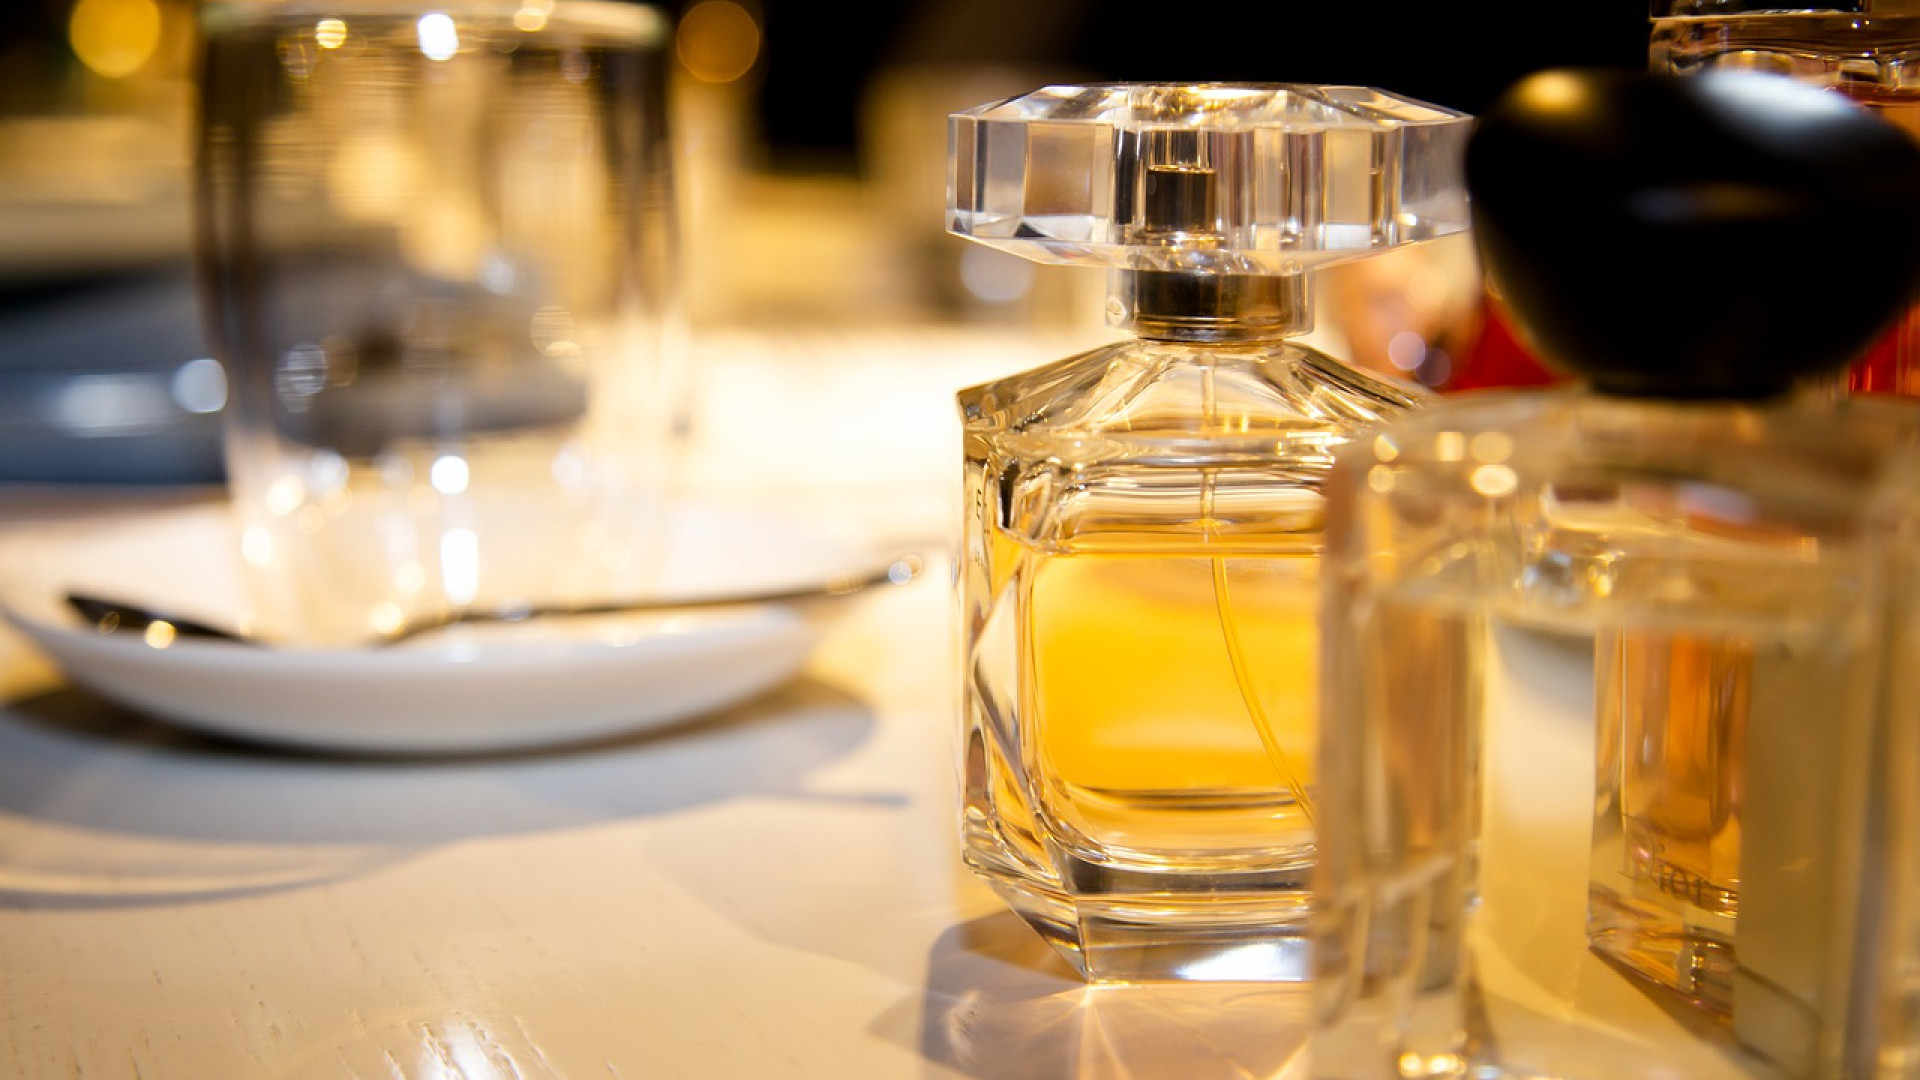 Les parfums Tom Ford, l’idée cadeau aux mille fragrances